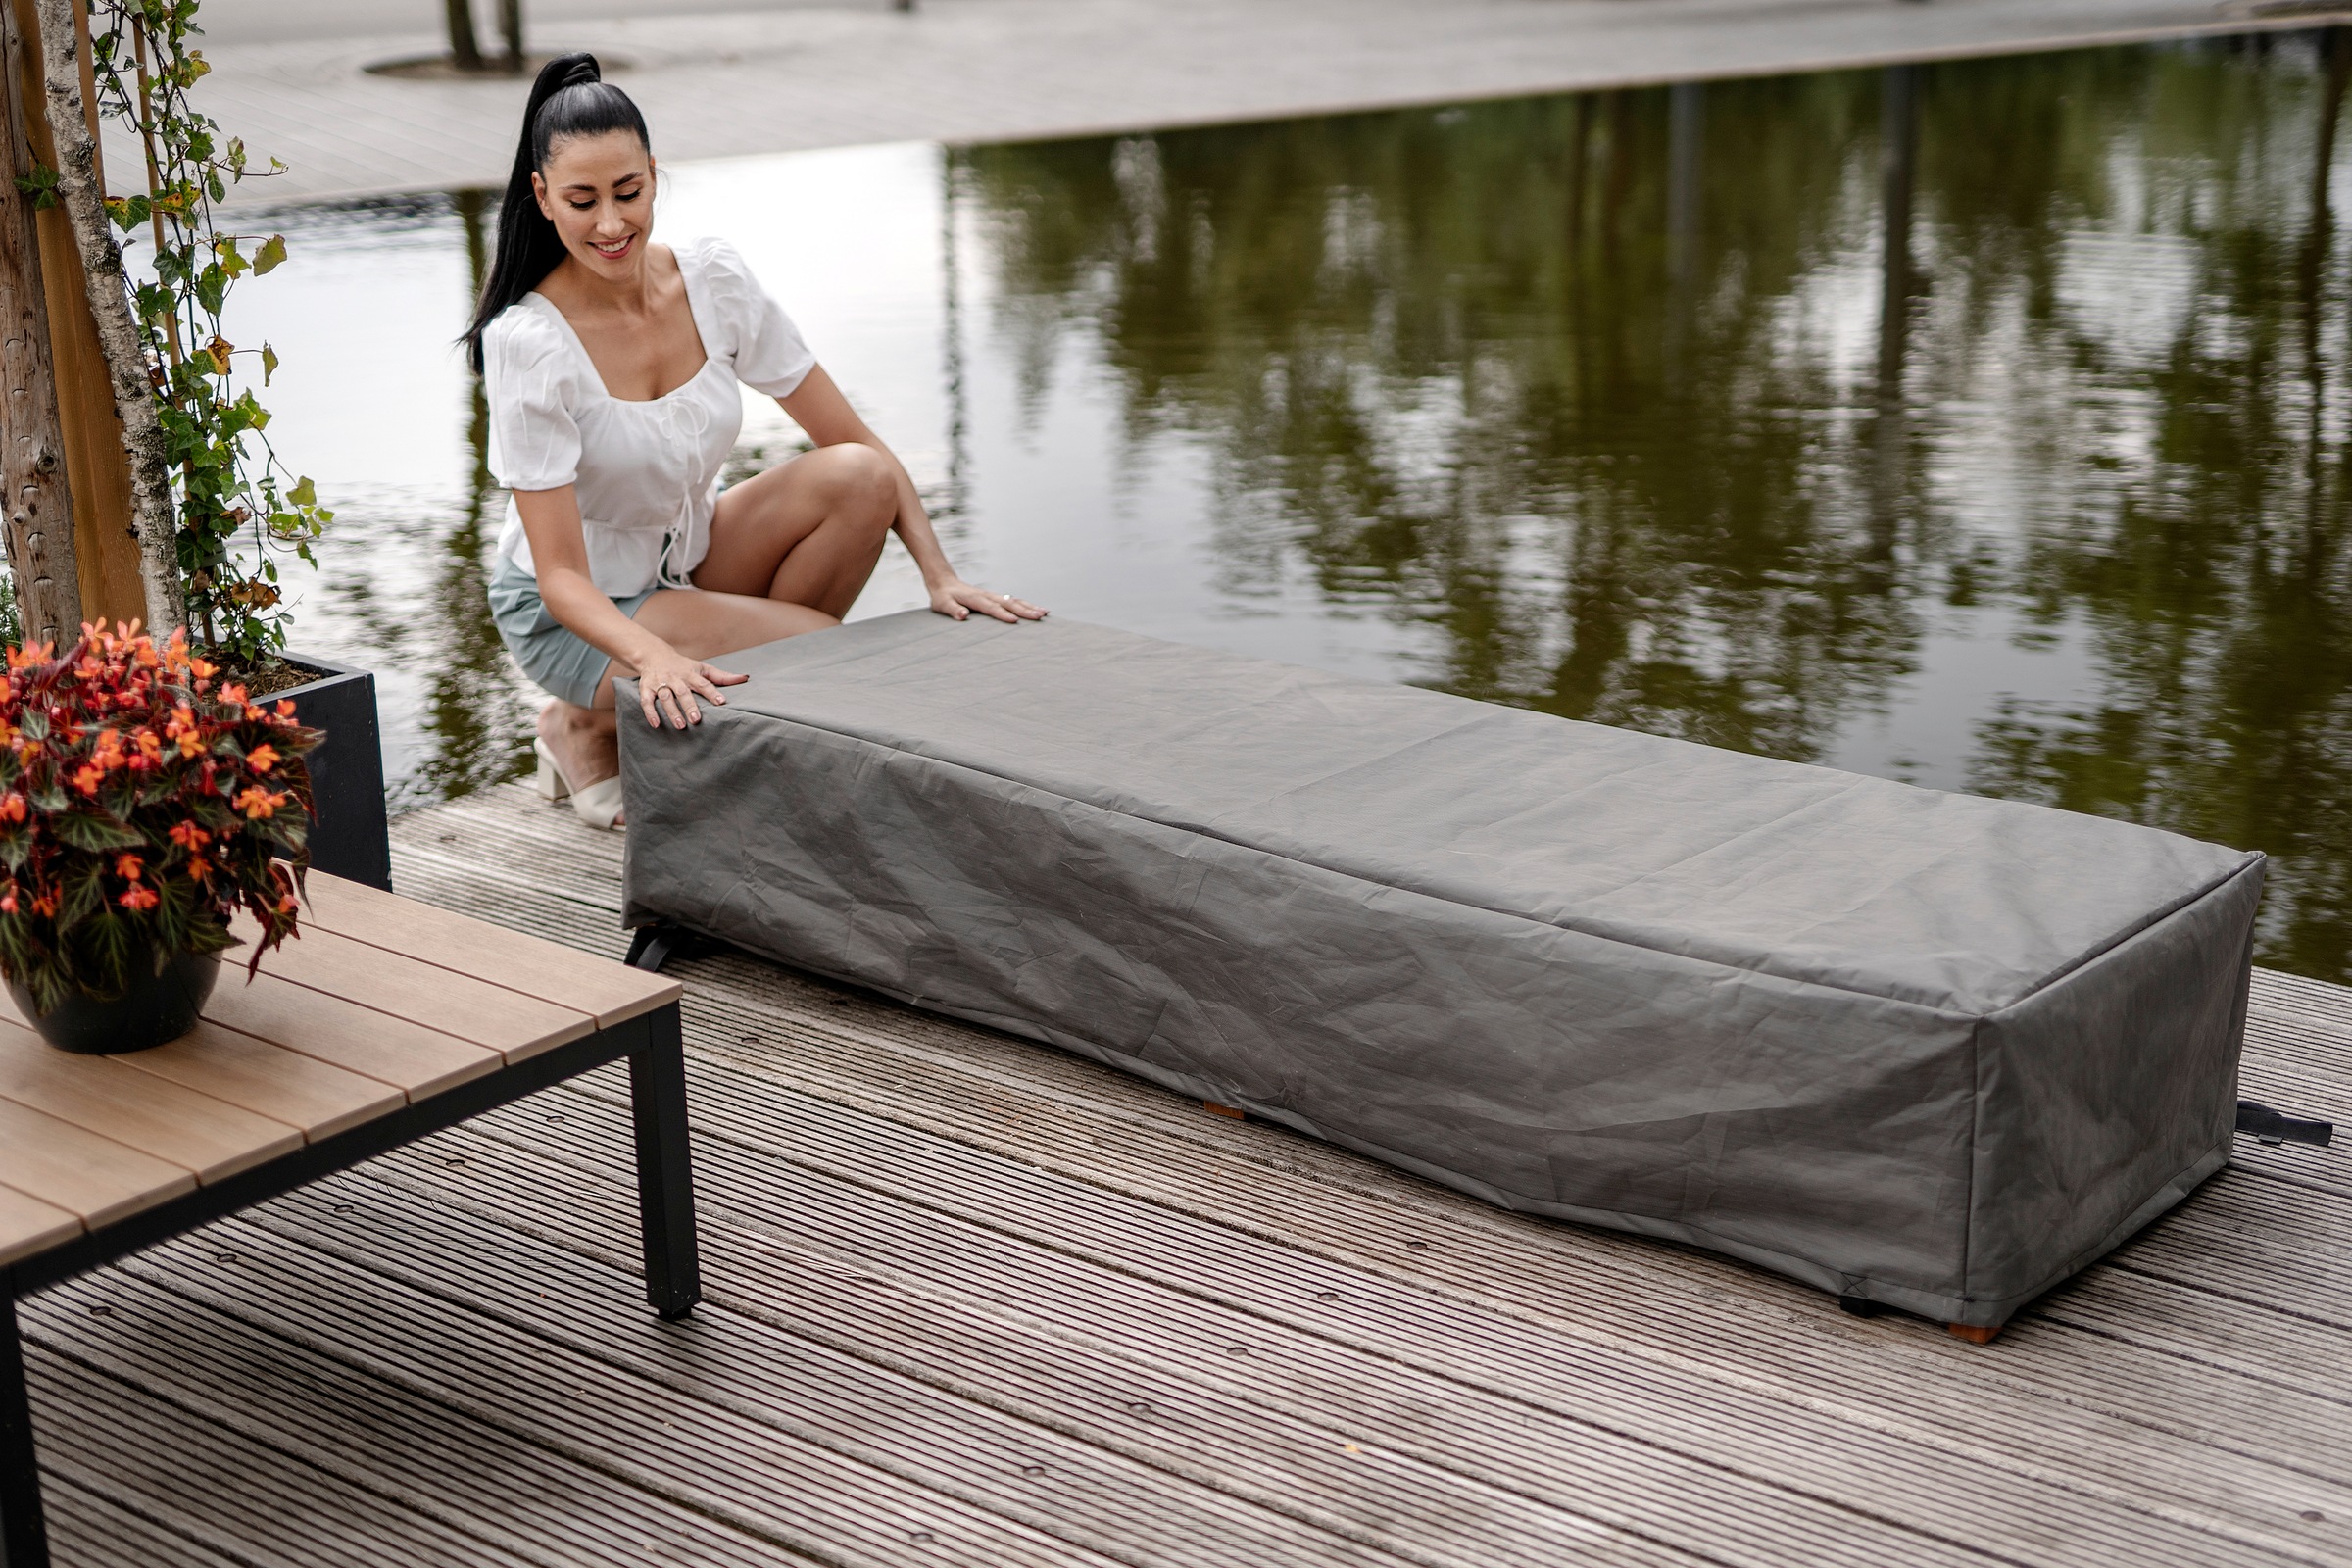 winza outdoor covers Gartenmöbel-Schutzhülle, geeignet für Liegestühle, 200x75x40 cm